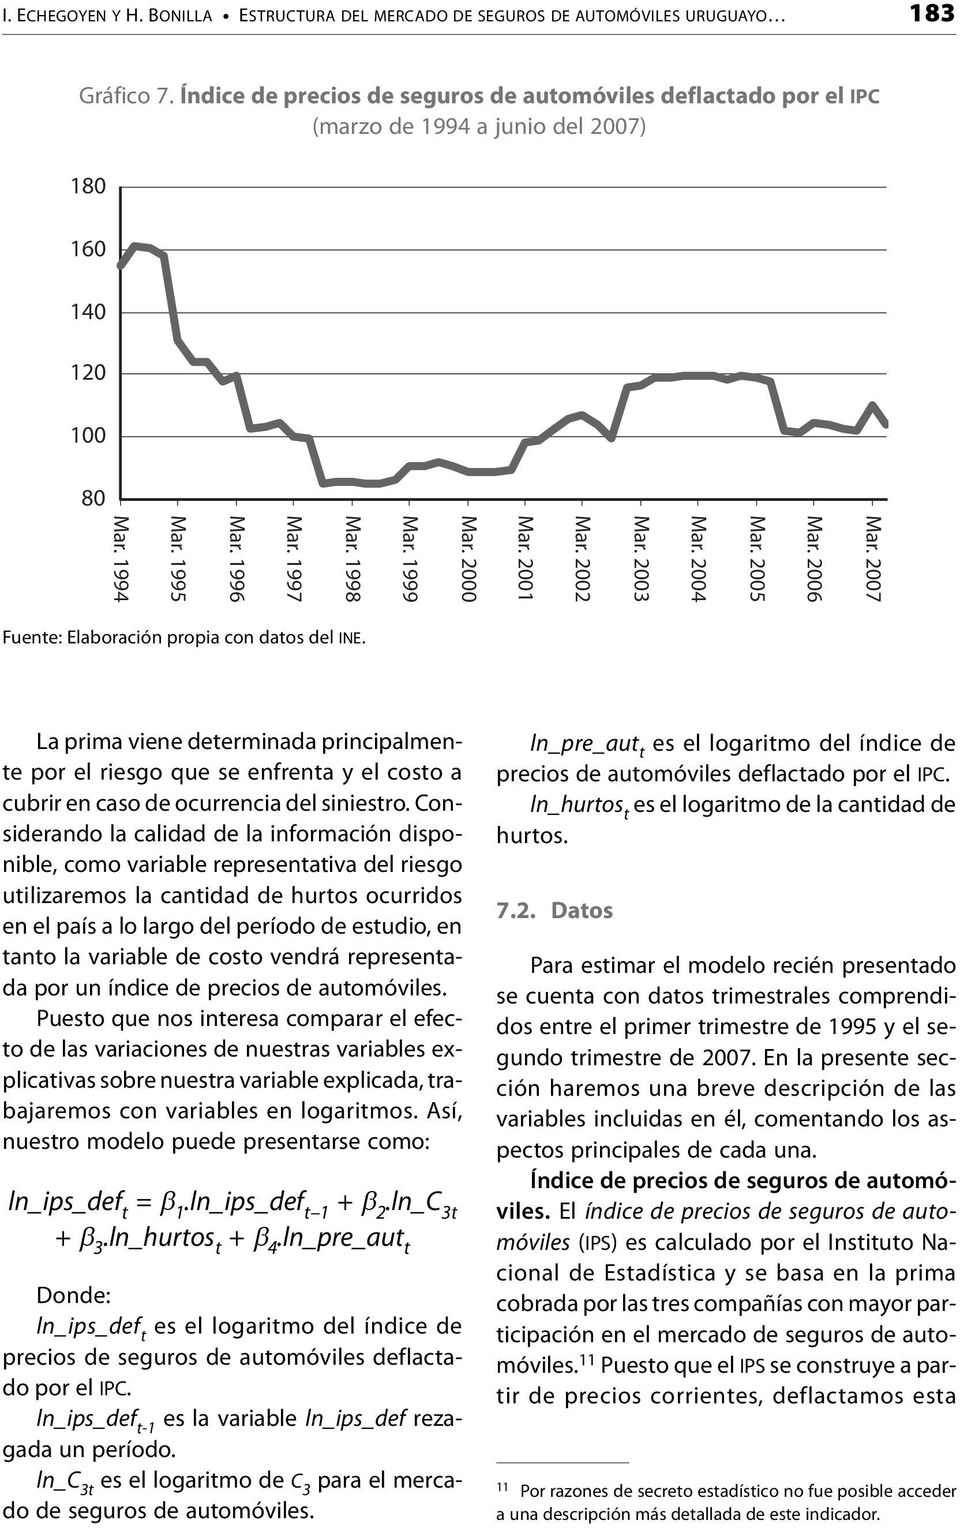 2000 Mar. 1999 Mar. 1998 Mar. 1997 Mar. 1996 Mar. 1995 Mar. 1994 Fuente: Elaboración propia con datos del INE.